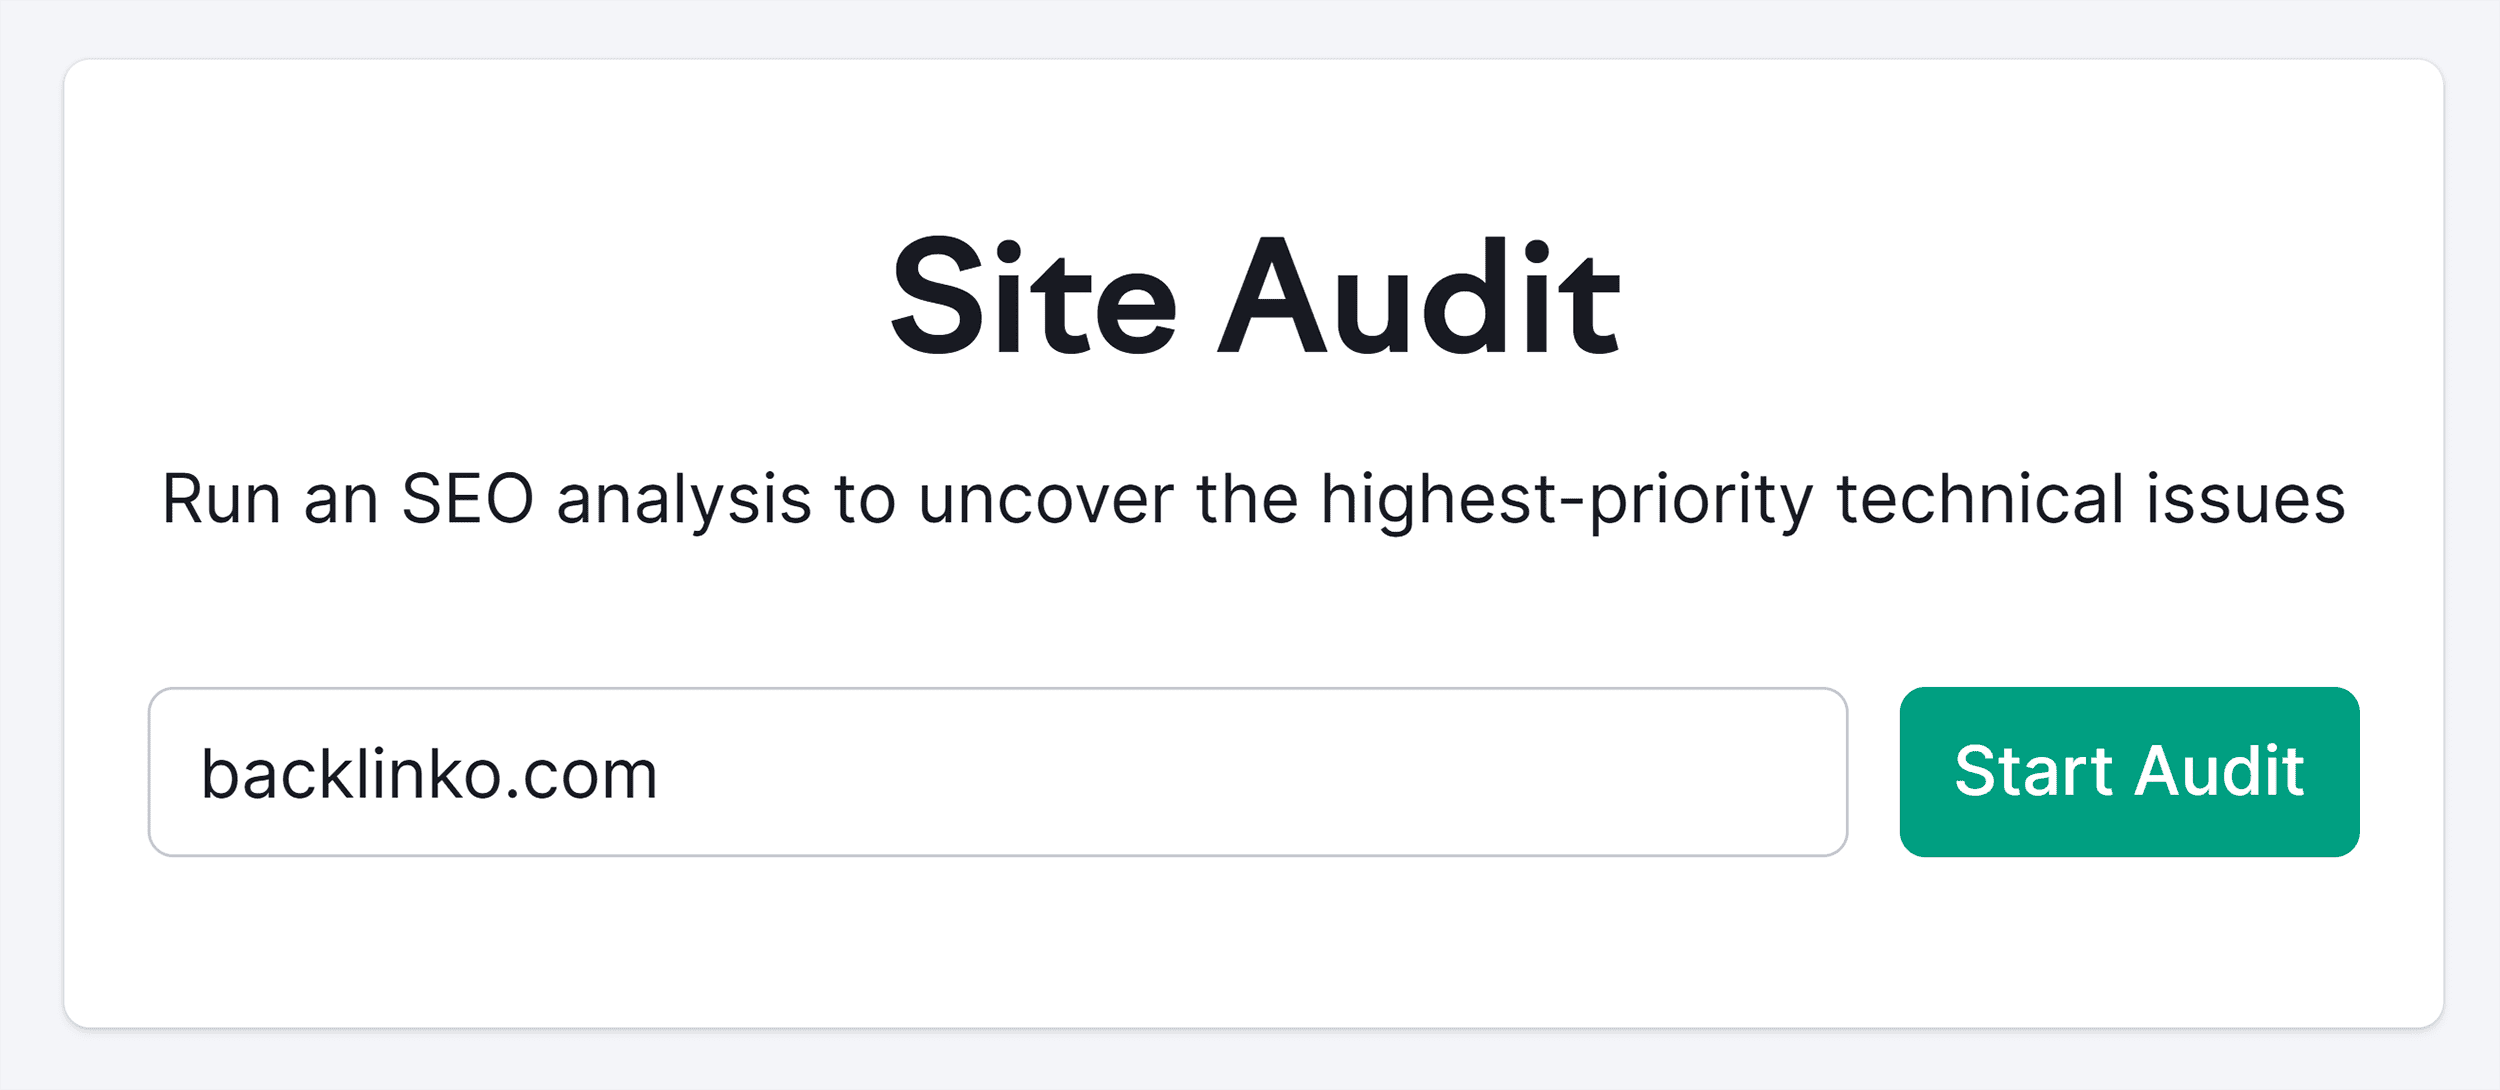 Semrush – Site Audit